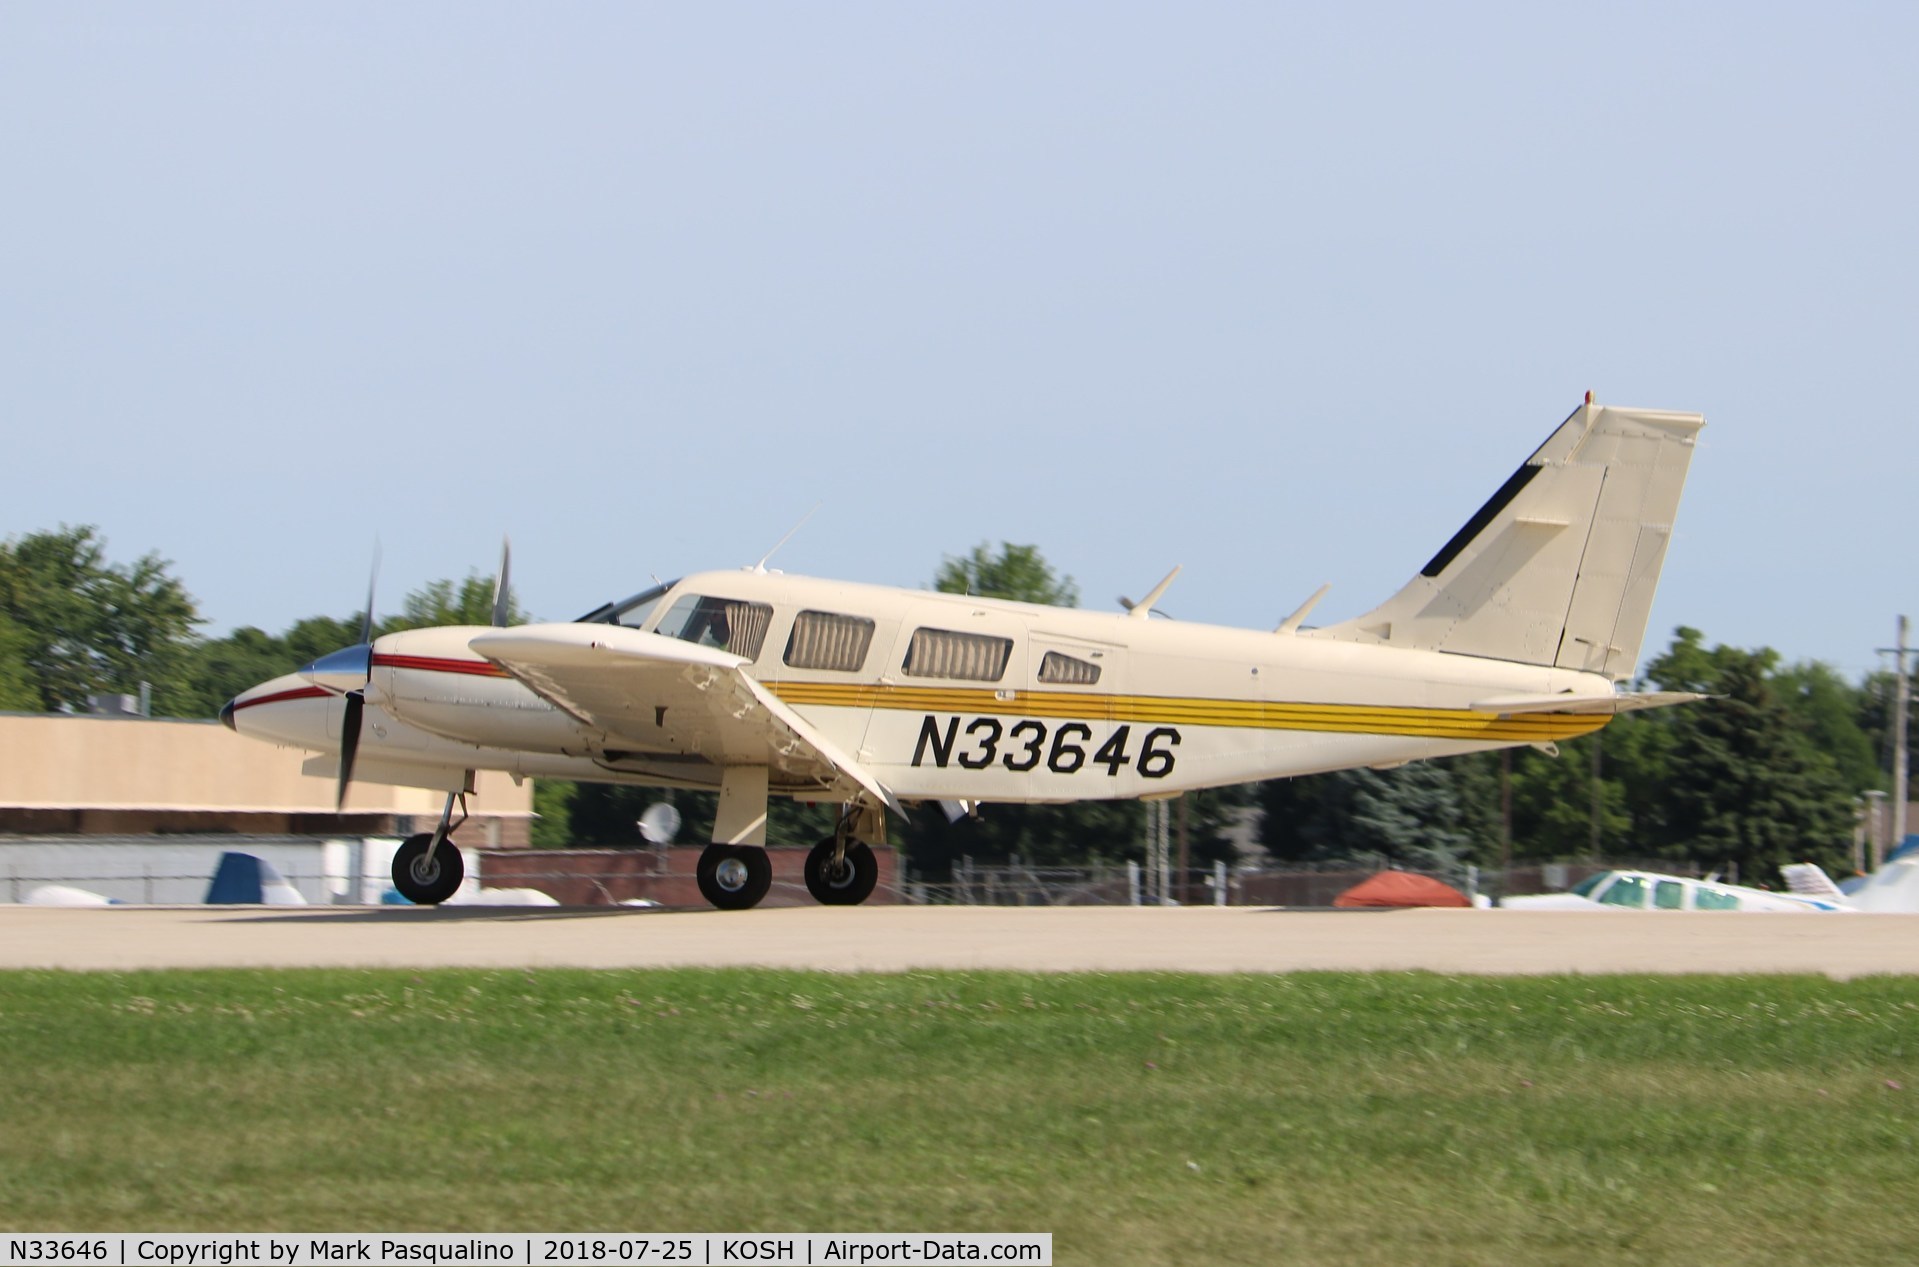 N33646, 1975 Piper PA-34-200T C/N 34-7570140, Piper PA-34-200T